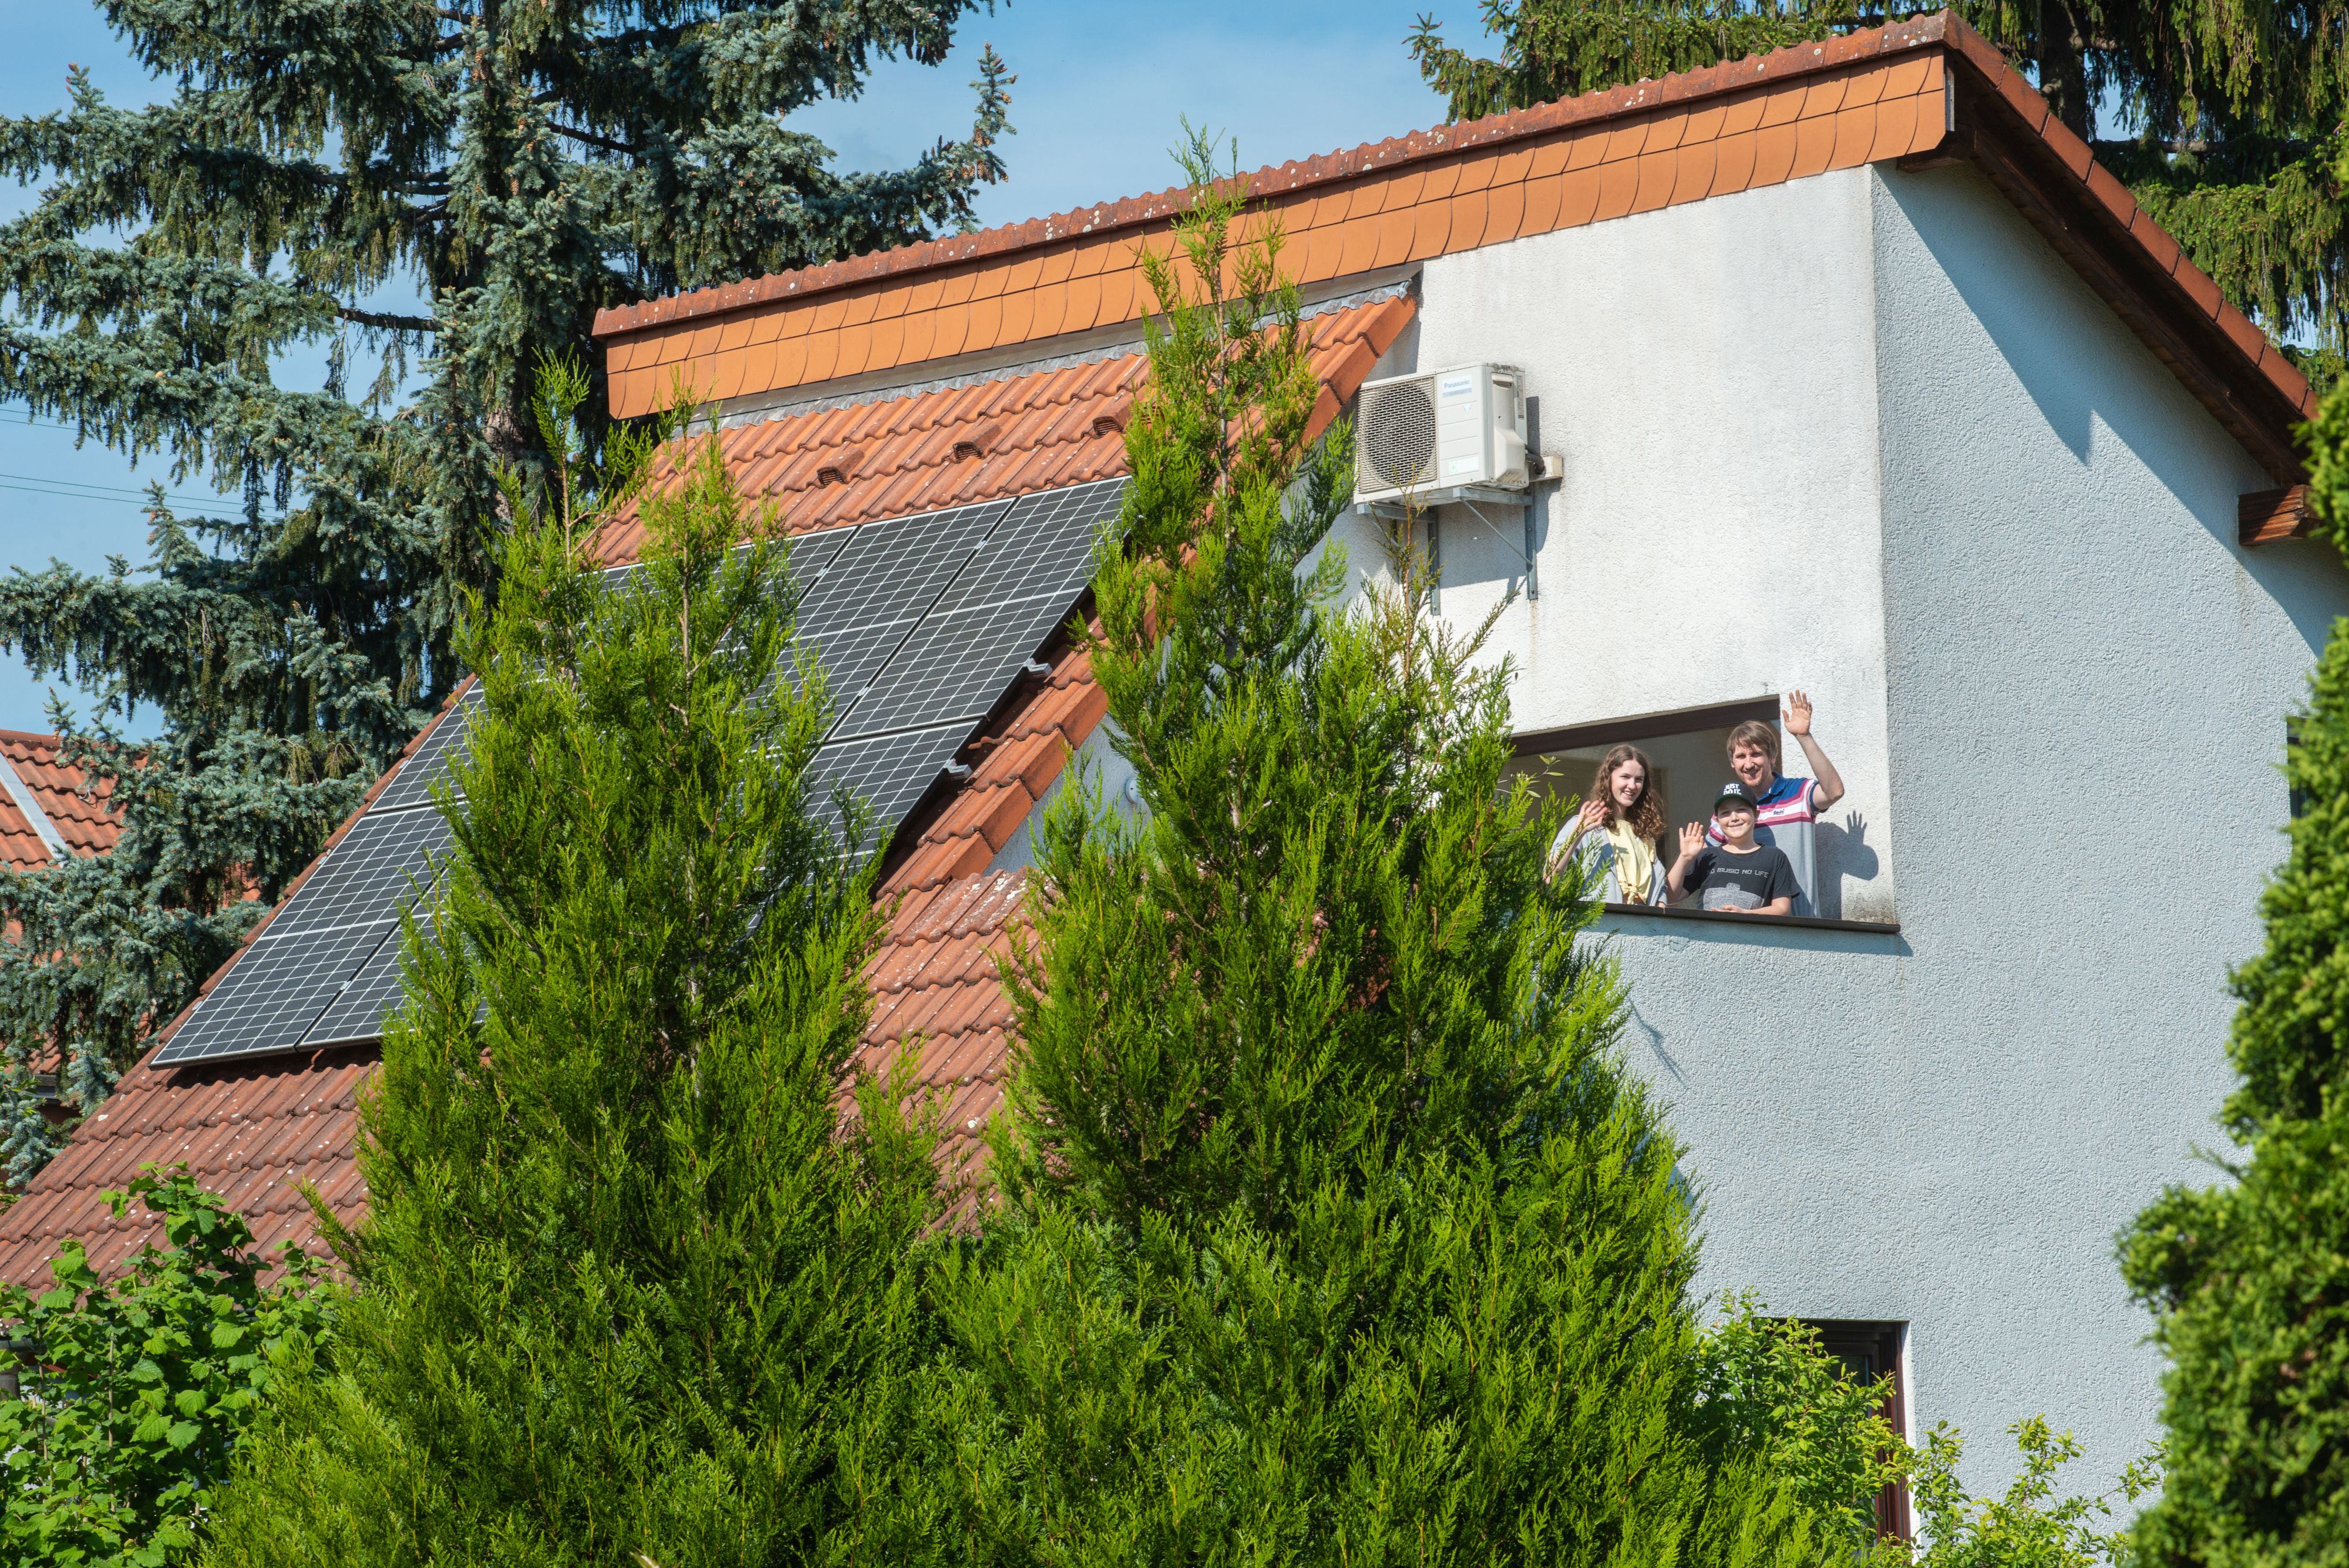 
    
            
                    Sie sind stolzer Betreiber einer PV-Anlage? Gerne nehmen wir Ihre PV-Anlage in die Liste der Best-Practice-Beispiele auf. PV-Anlage auf diesem Einfamilienhaus erzeugt fast die doppelte Menge des verbrauchten Stroms der fünfköpfigen Familie aus Heidelberg.
                
        
